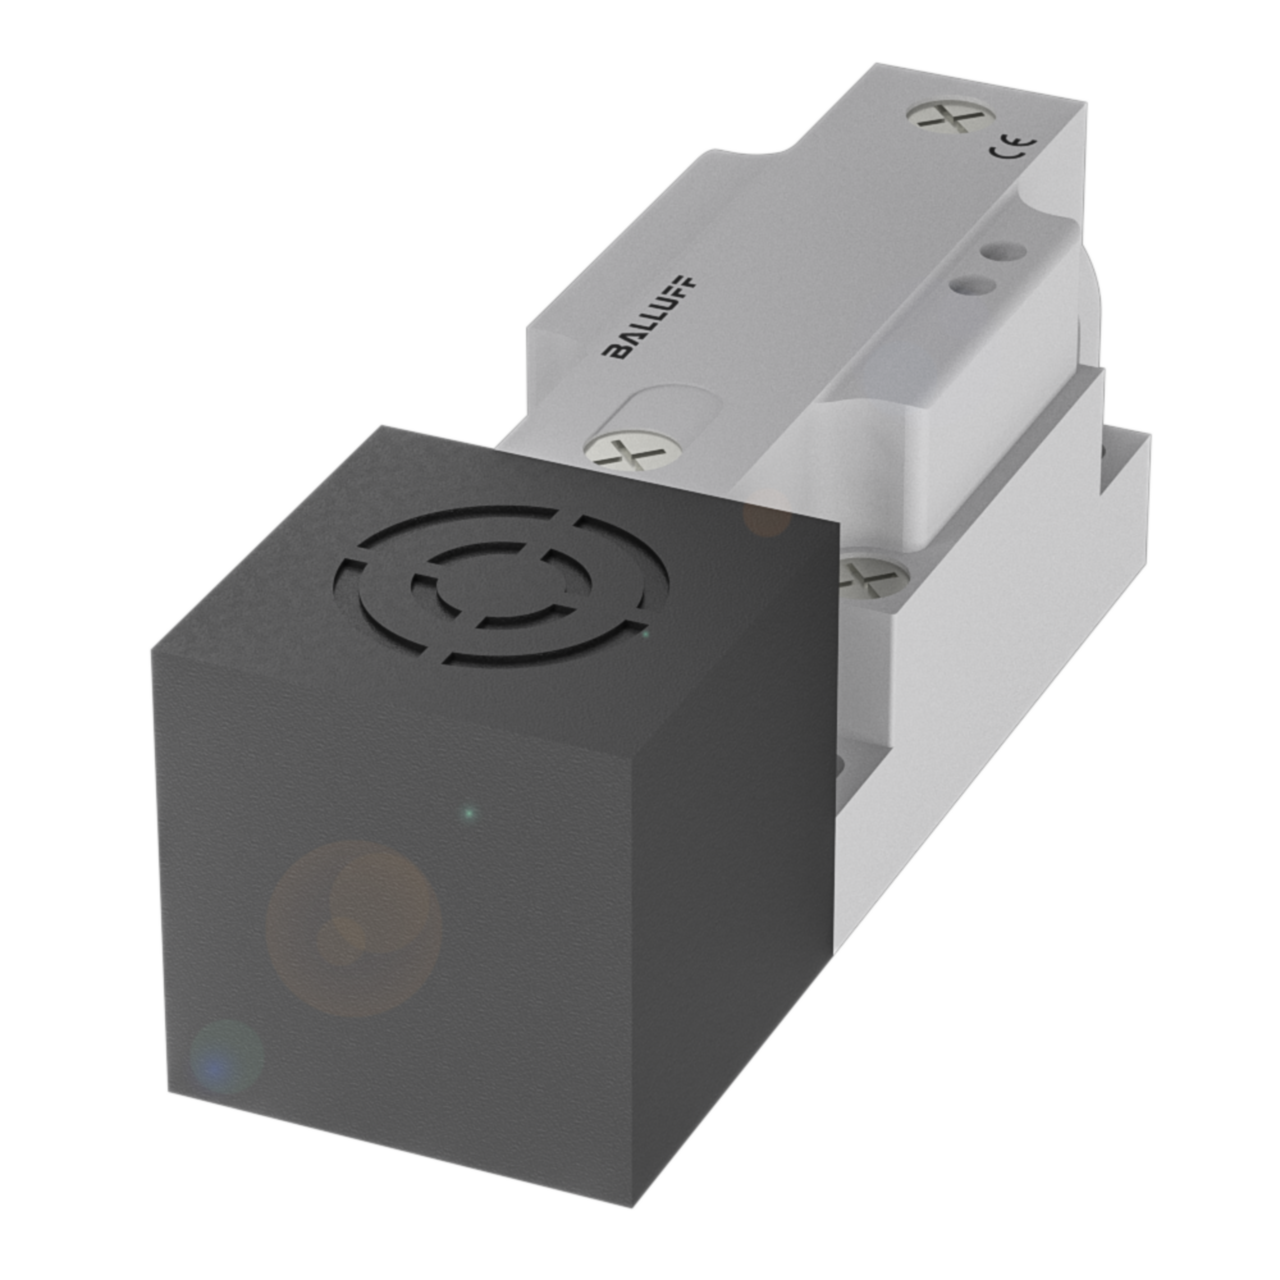 Details about   Balluff Unisensor Proximity Sensor  BES 517-132-P4-H-S4  10-55vdc  25mm sens 